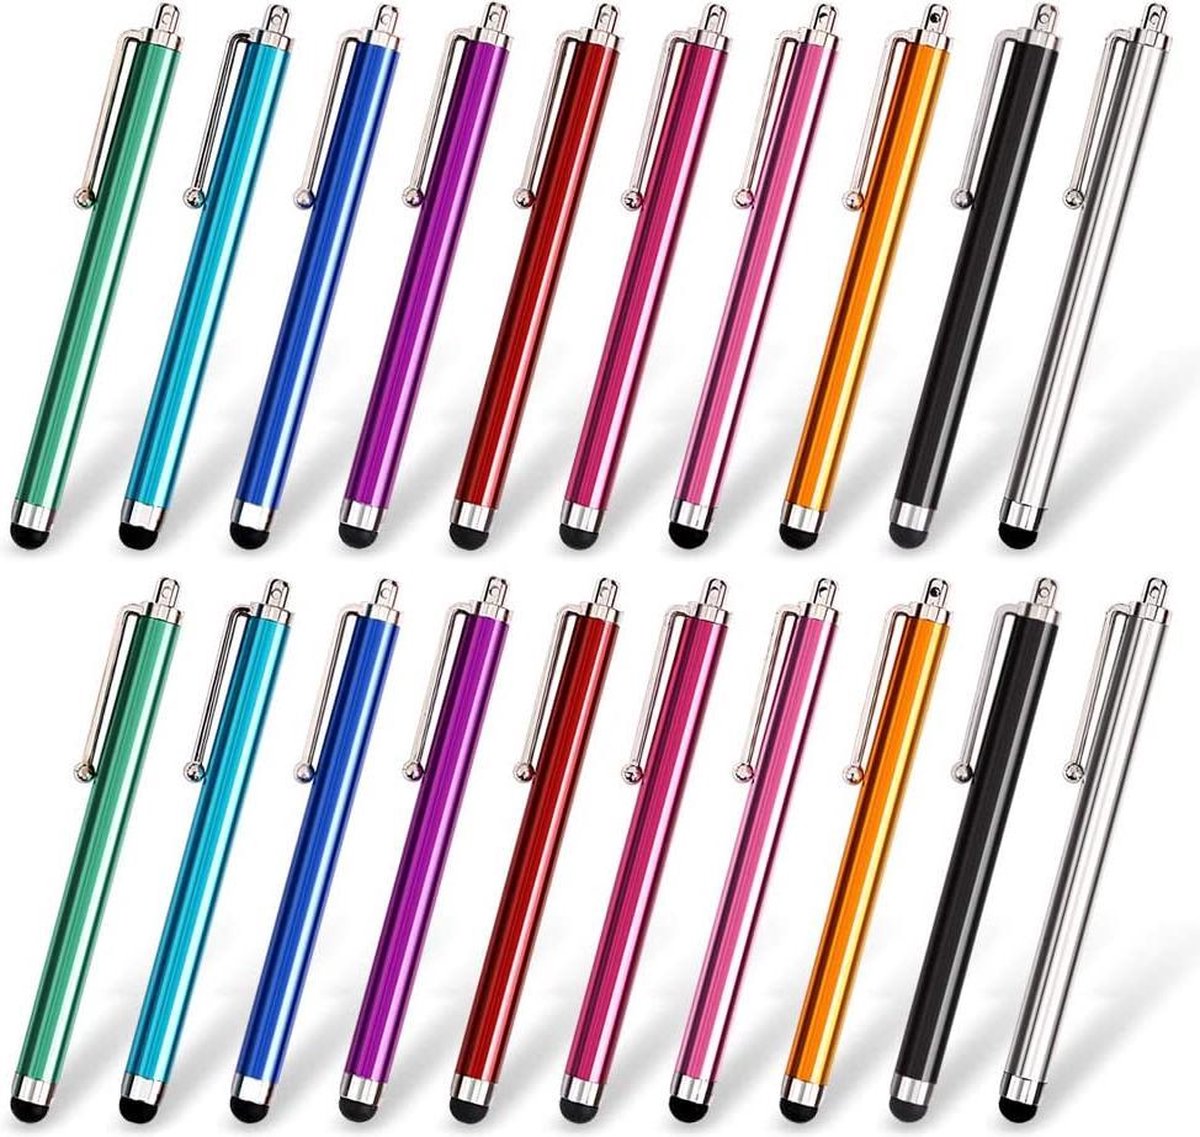 Stylus Pen Set van 20 stuks, universeel capacitief touchscreen, compatibel met iPad, iPhone, Samsung, Kindle Tough, compatibel met alle apparaten met capacitief touchscreen, 10 kleuren